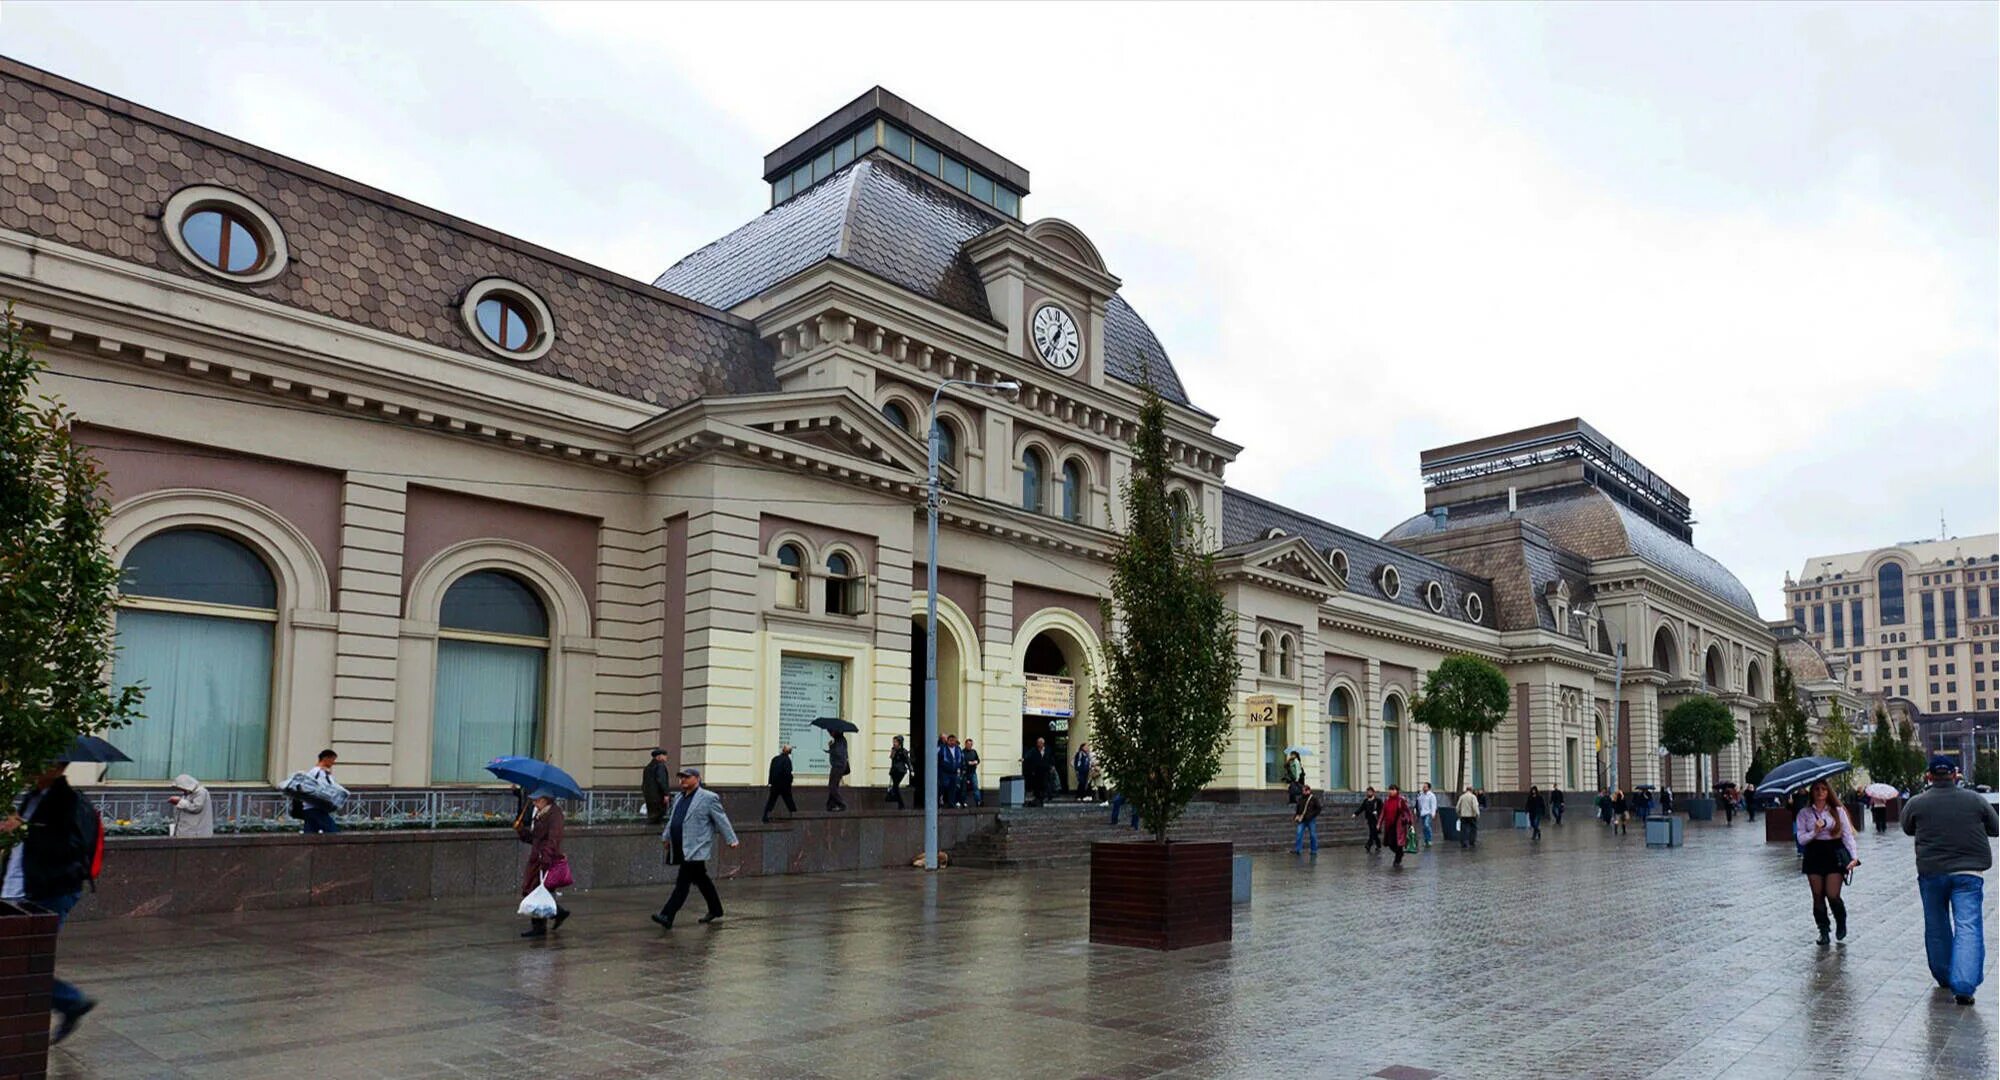 Площадь Павелецкого вокзала. Павелецкий вокзал Москва. Площадь около Павелецкого вокзала. Павелецкий вокзал ж.д..